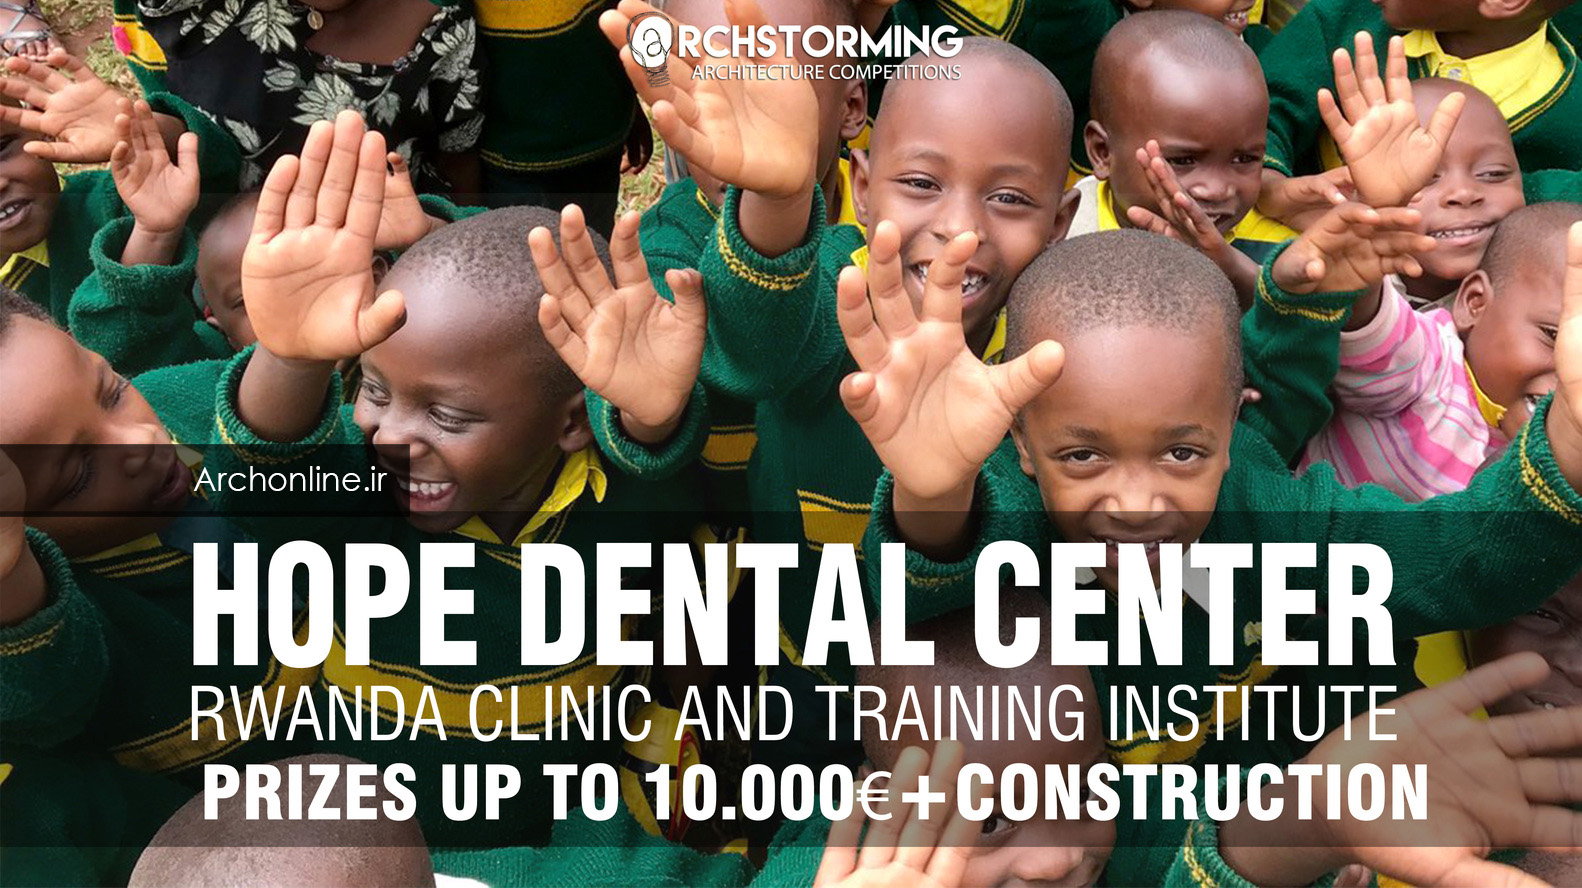 فراخوان طراحی مرکز دندانپزشکی: کلینیک و انستیتوی آموزش Rwanda